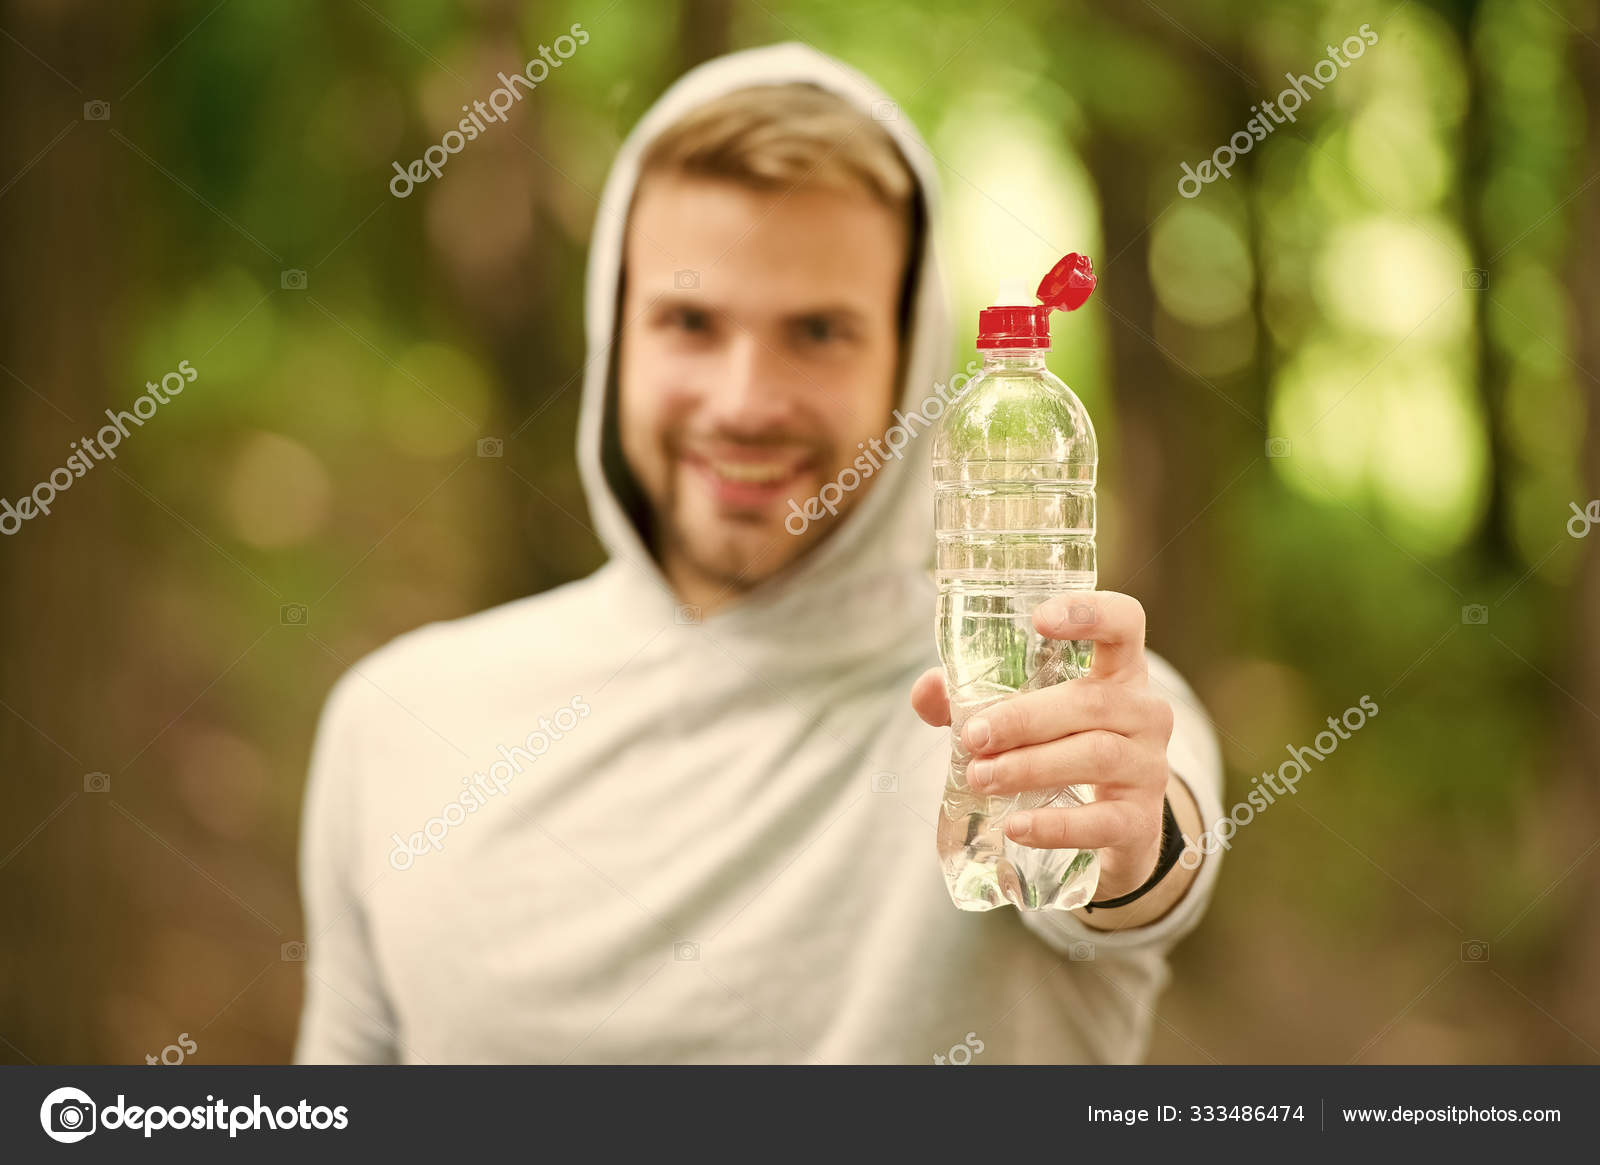 Sporty Sip Water Bottle